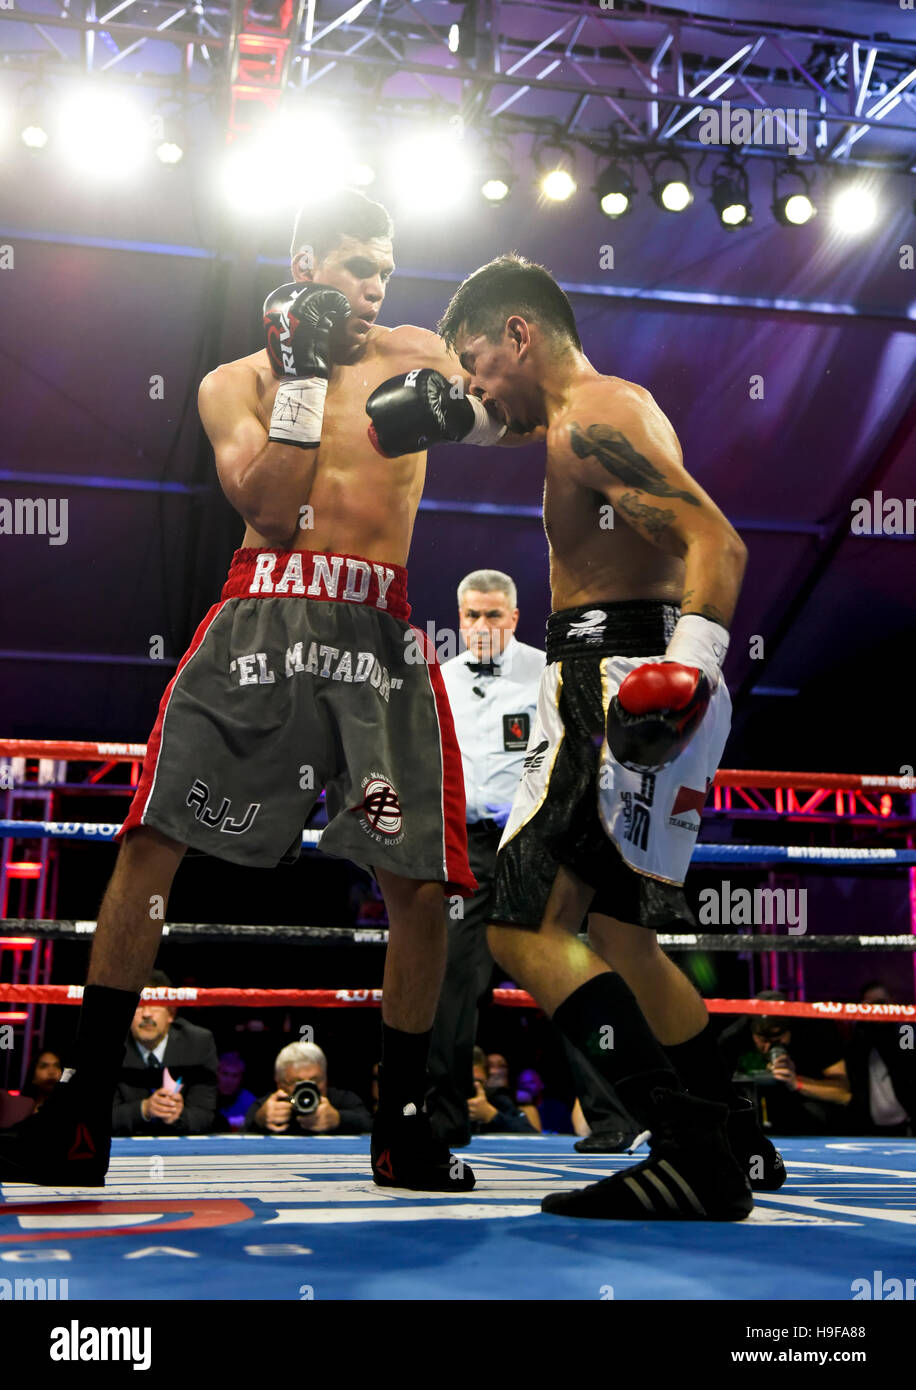 Las Vegas, Nevada November 18, 2016 - Randy 'El Matador' Moreno vs Daniel Perales at the “Knockout Night at the D” Stock Photo